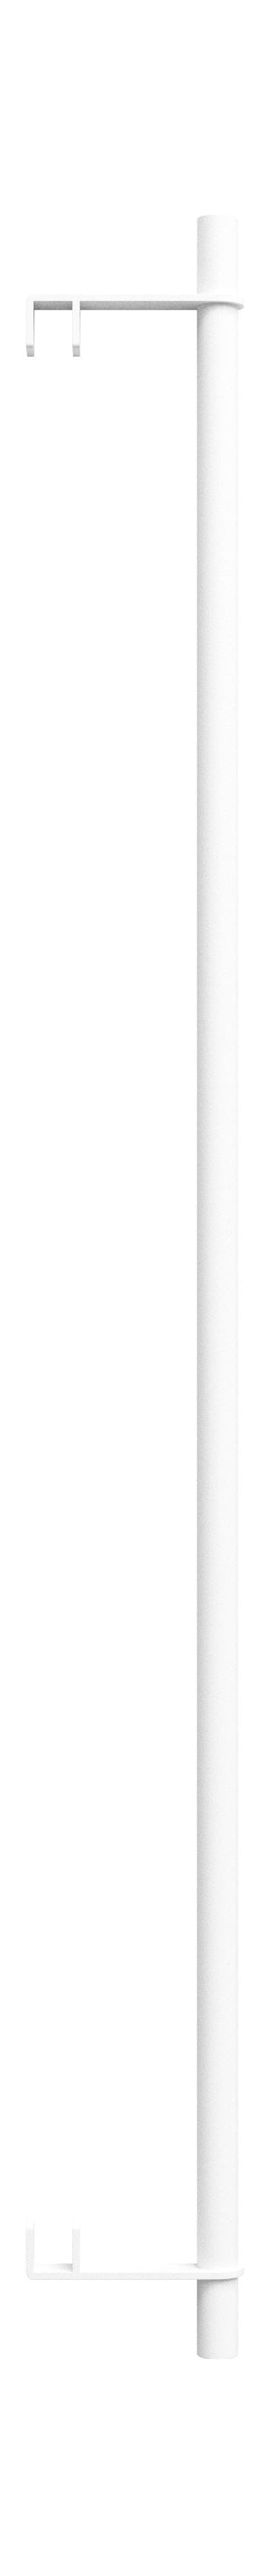 Moebe Hyllyjärjestelmä/seinähyllyt vaatekaula 85 cm, valkoinen